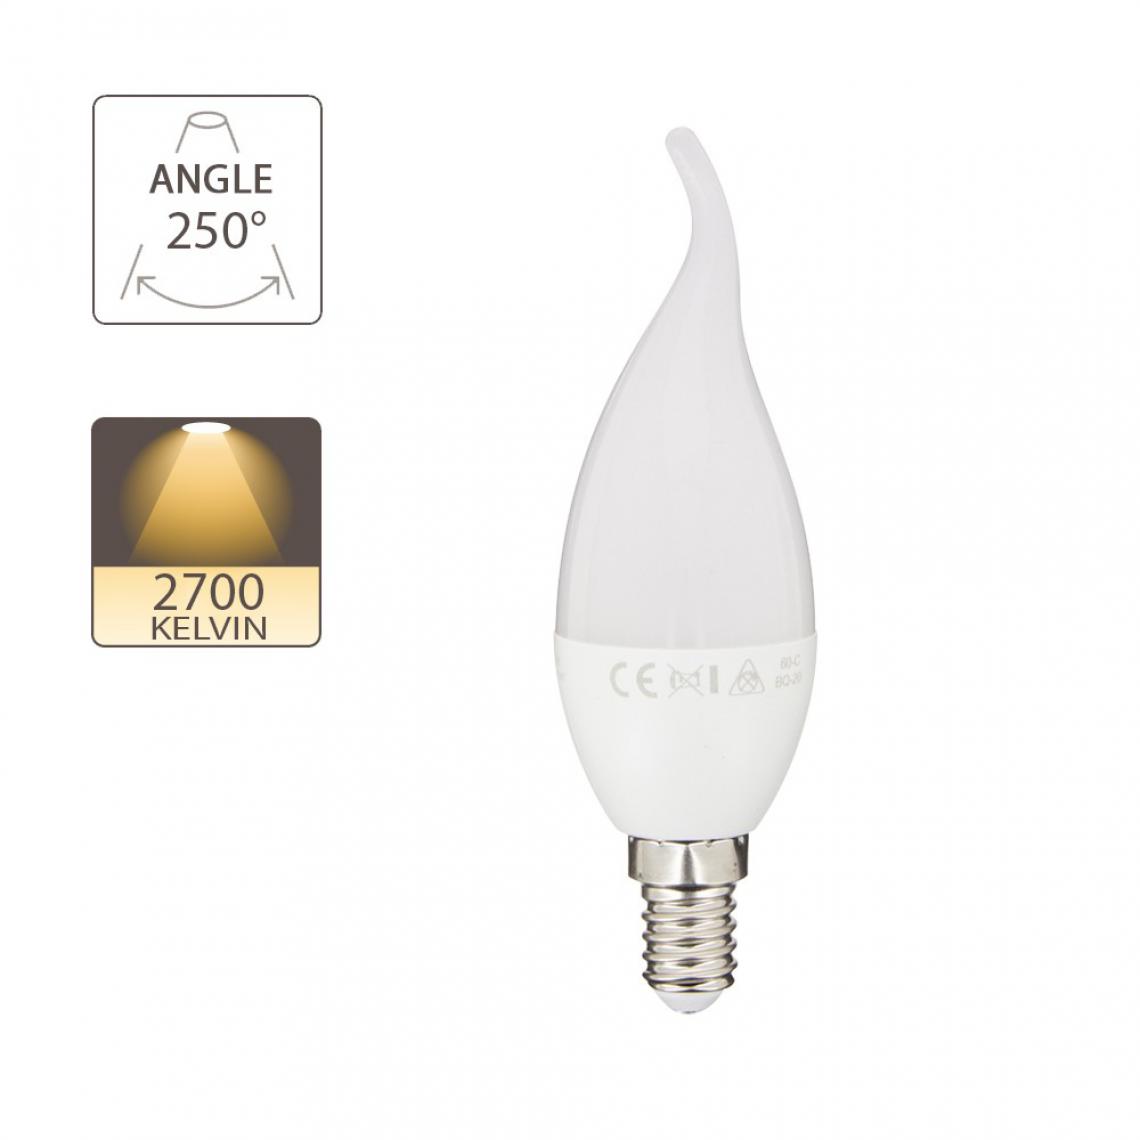 Supraled - Ampoule LED (Flamme Coup de vent) culot E14 - Ampoules LED